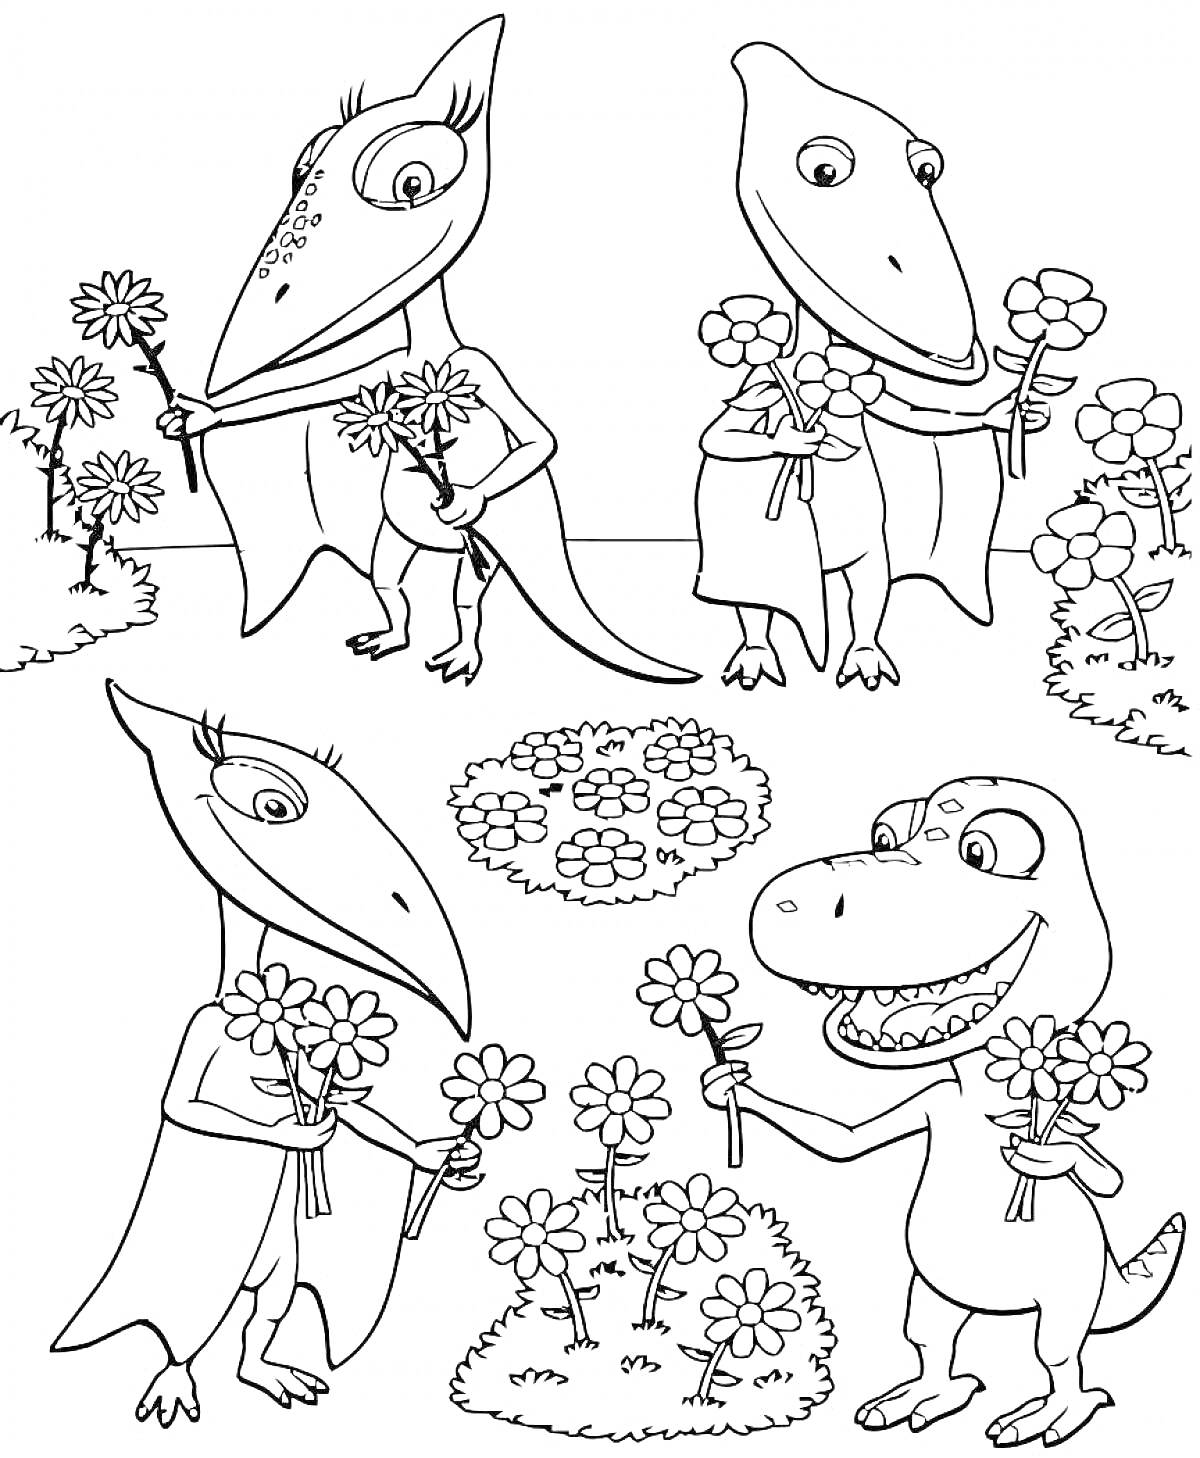 Динозавры с цветами на поляне